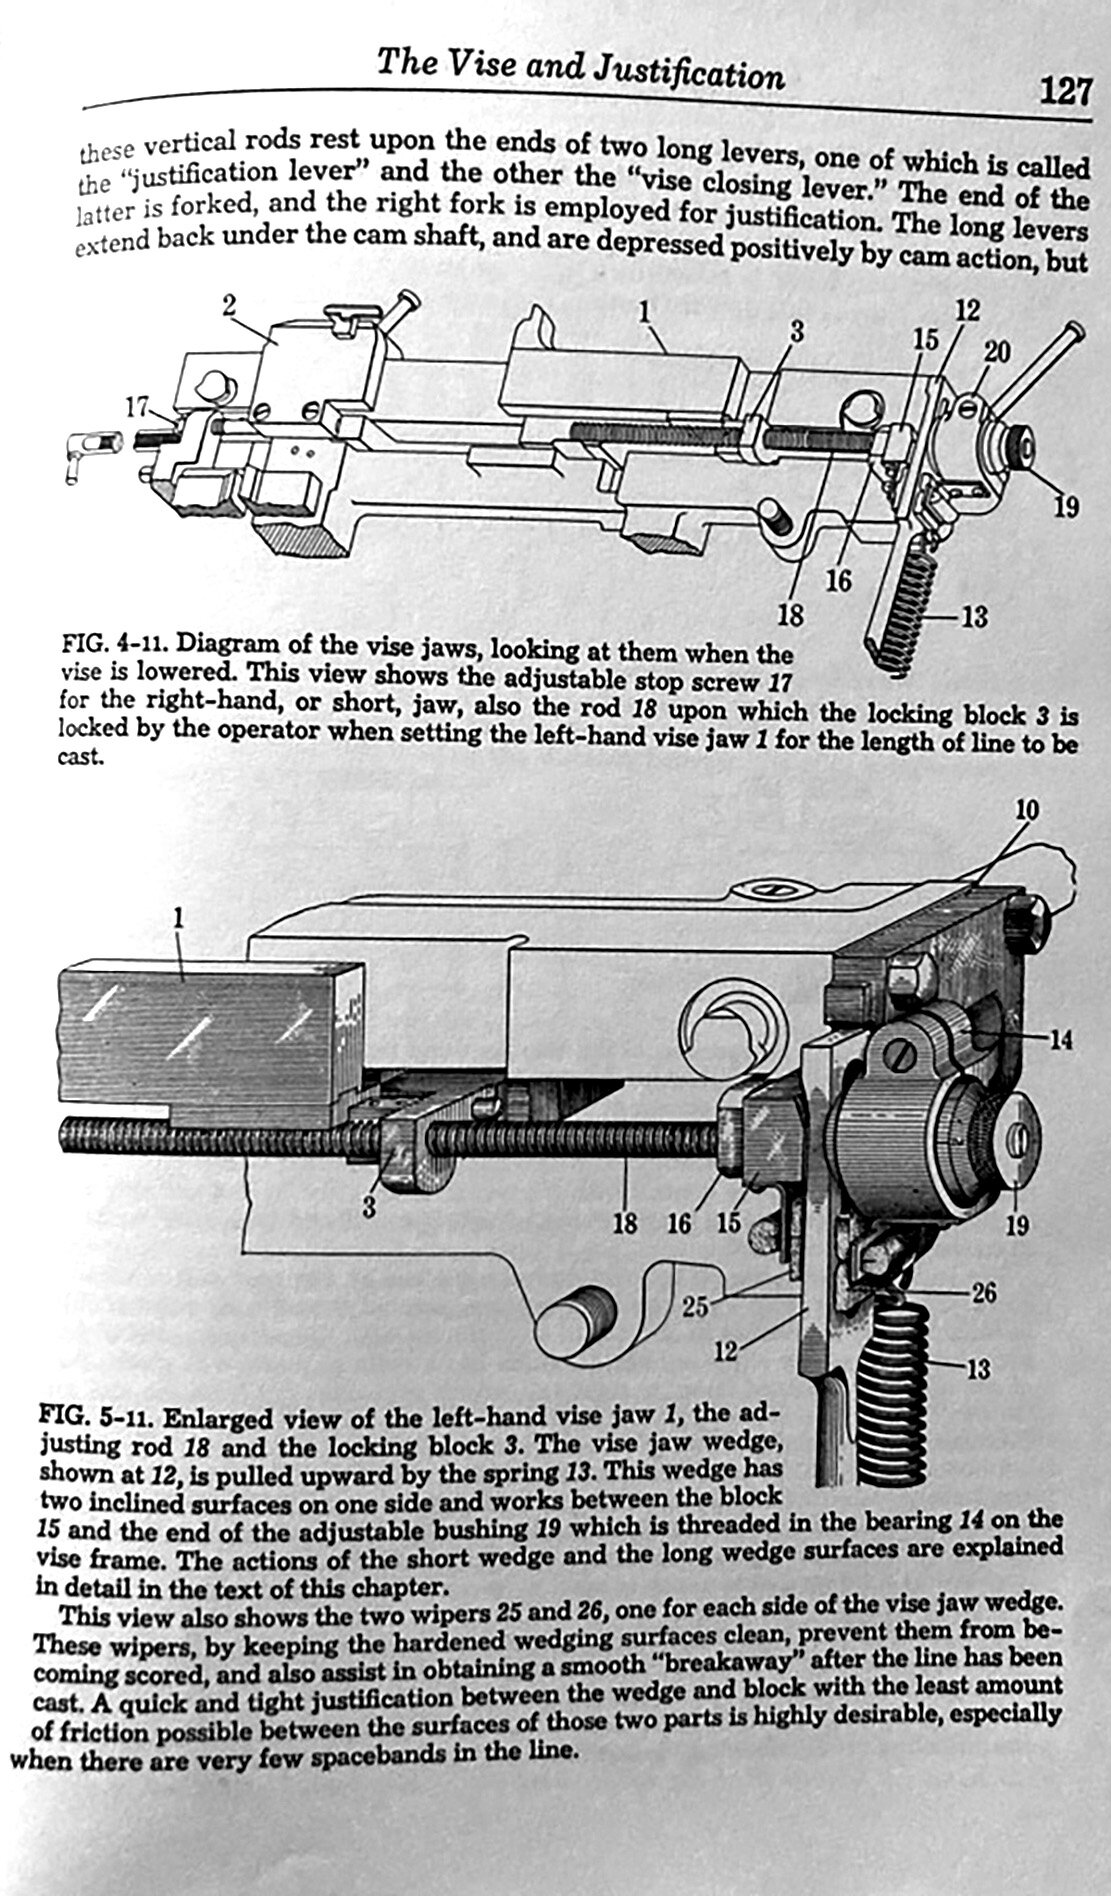 Linotype Machine Principles Page 127.jpg